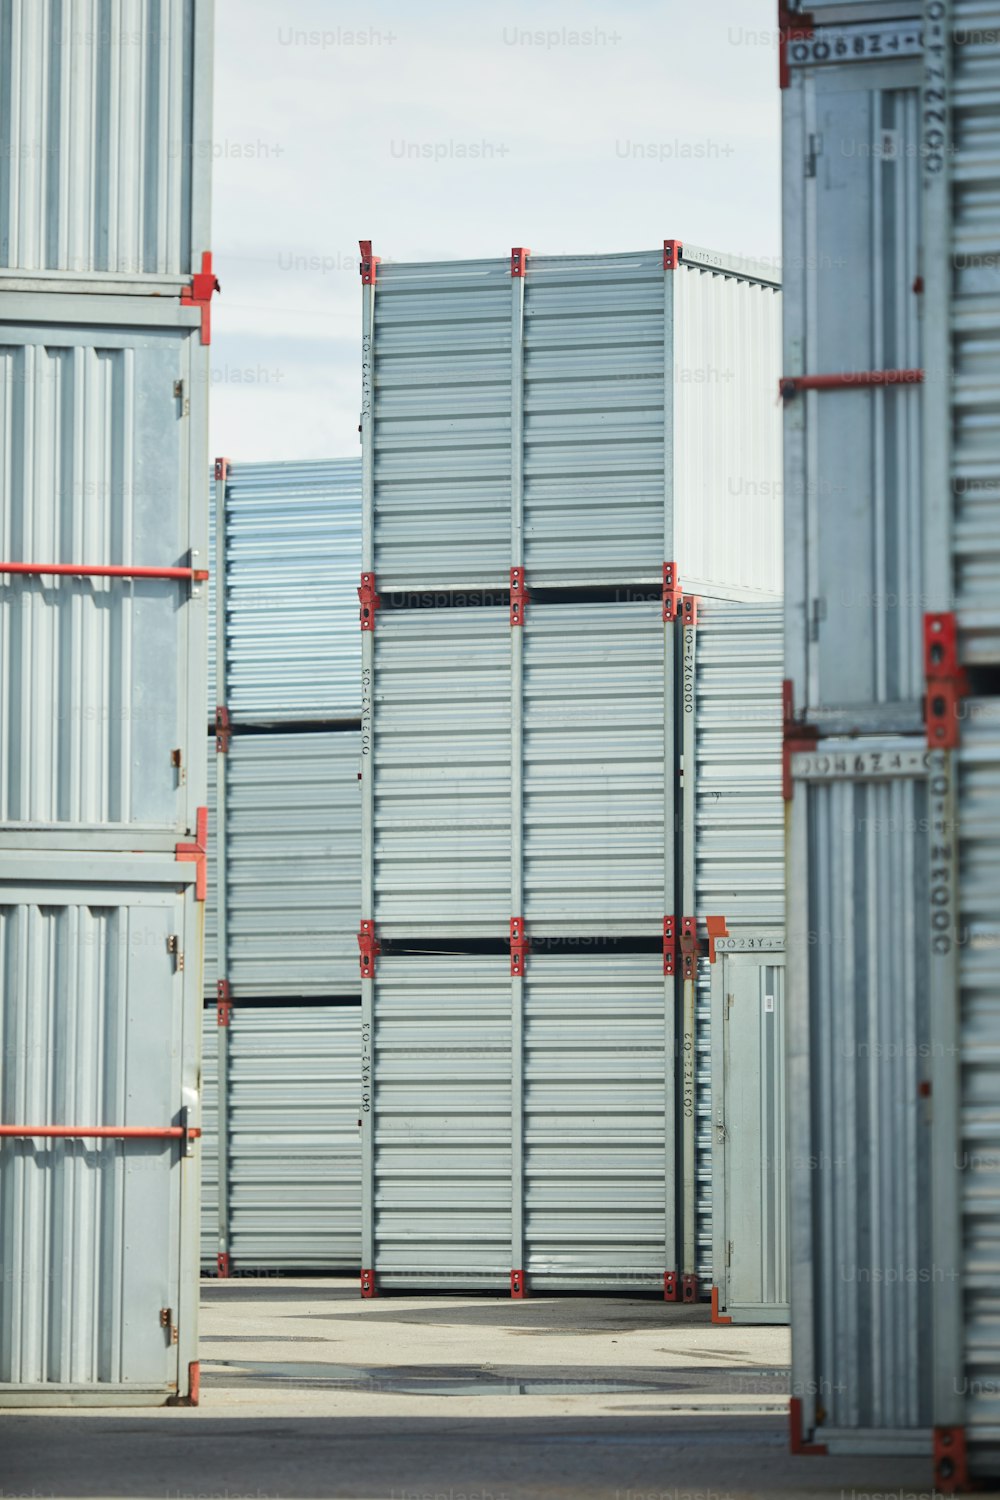 Pilas de contenedores de almacenamiento nuevos que se pueden usar para almacenar carga y otras cosas o suministros